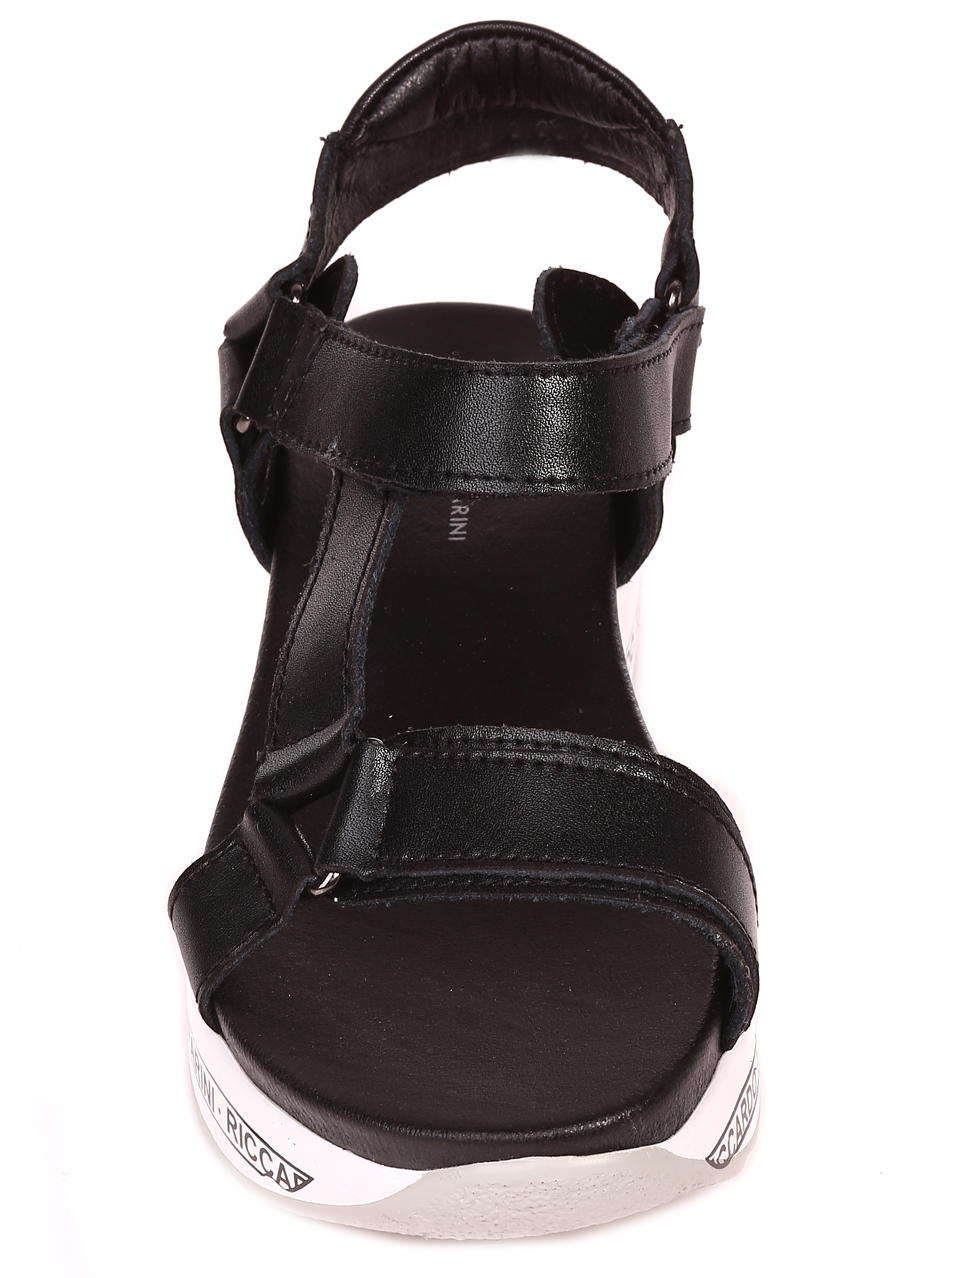 Ежедневни дамски сандали на платформа от естествена кожа 4AF-22146 black